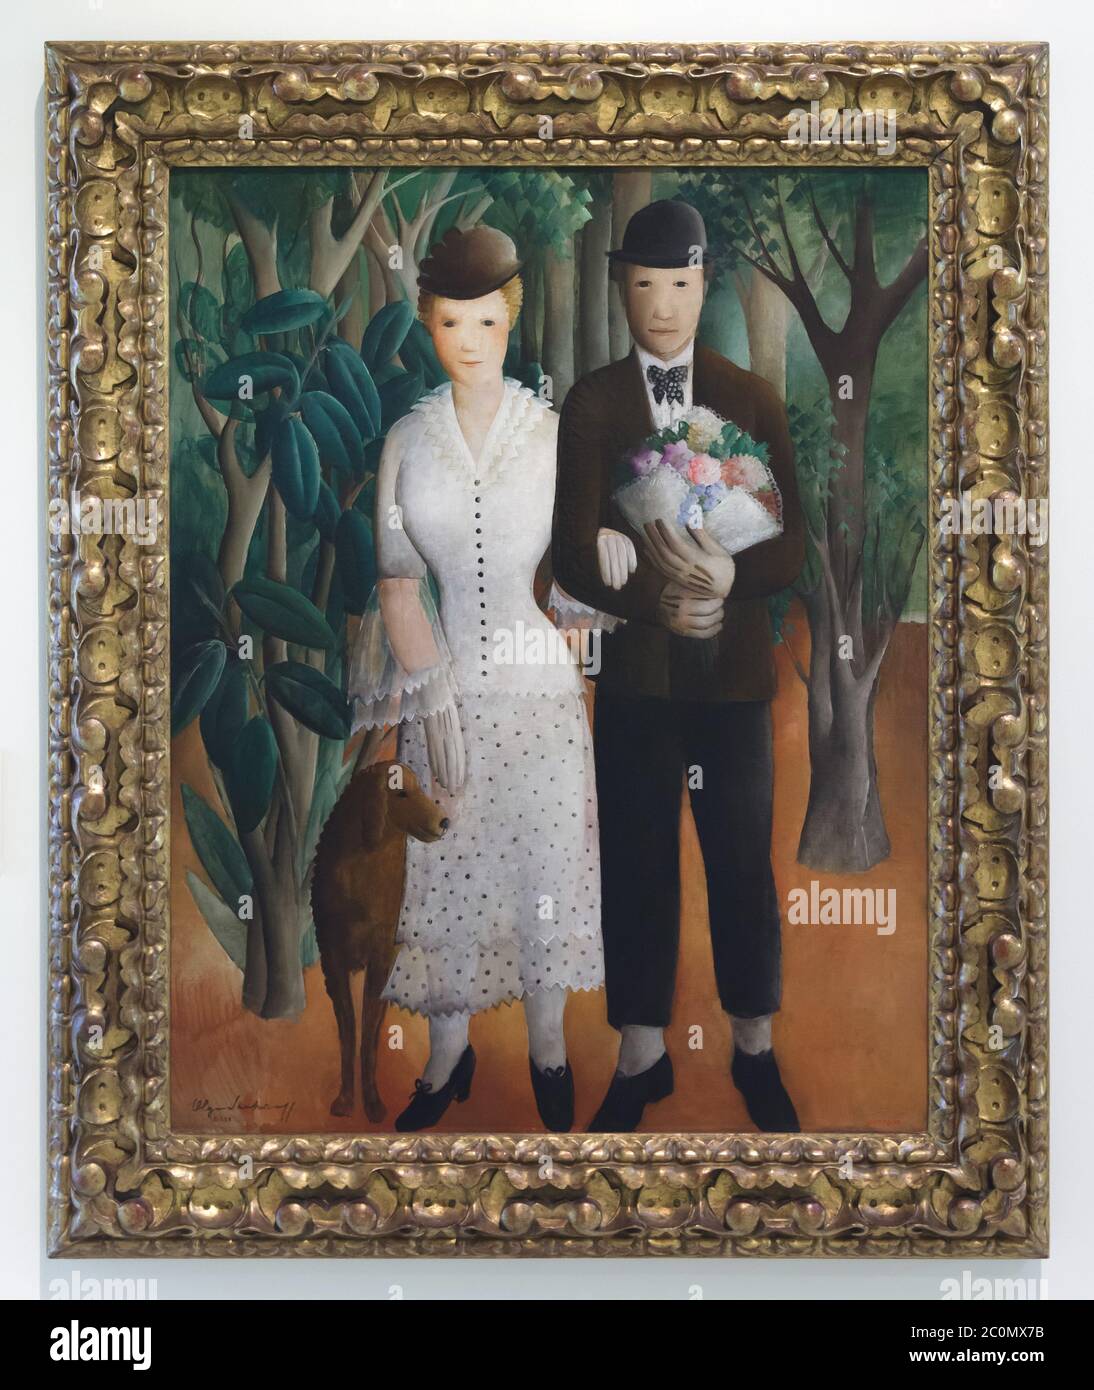 Peinture de "newlyweds" par le peintre espagnol naïf Olga Sacharoff (1929) exposé au Musée national d'Art de Catalogne (Museu Nacional d'Art de Catalunya) à Barcelone, Catalogne, Espagne. Banque D'Images